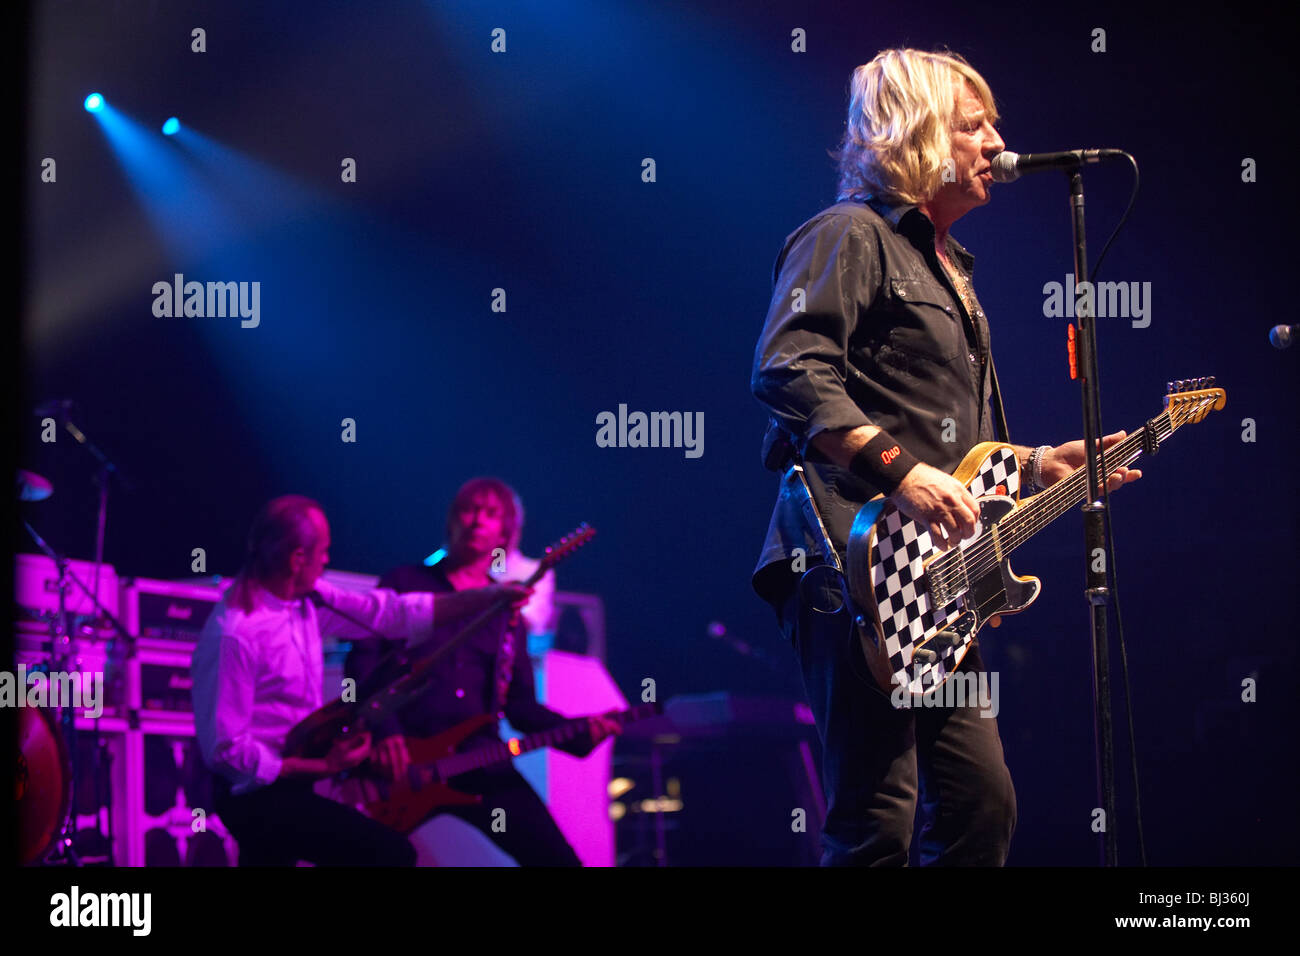 Groupe de rock britannique Status Quo sur scène lors de leur tournée européenne. Banque D'Images